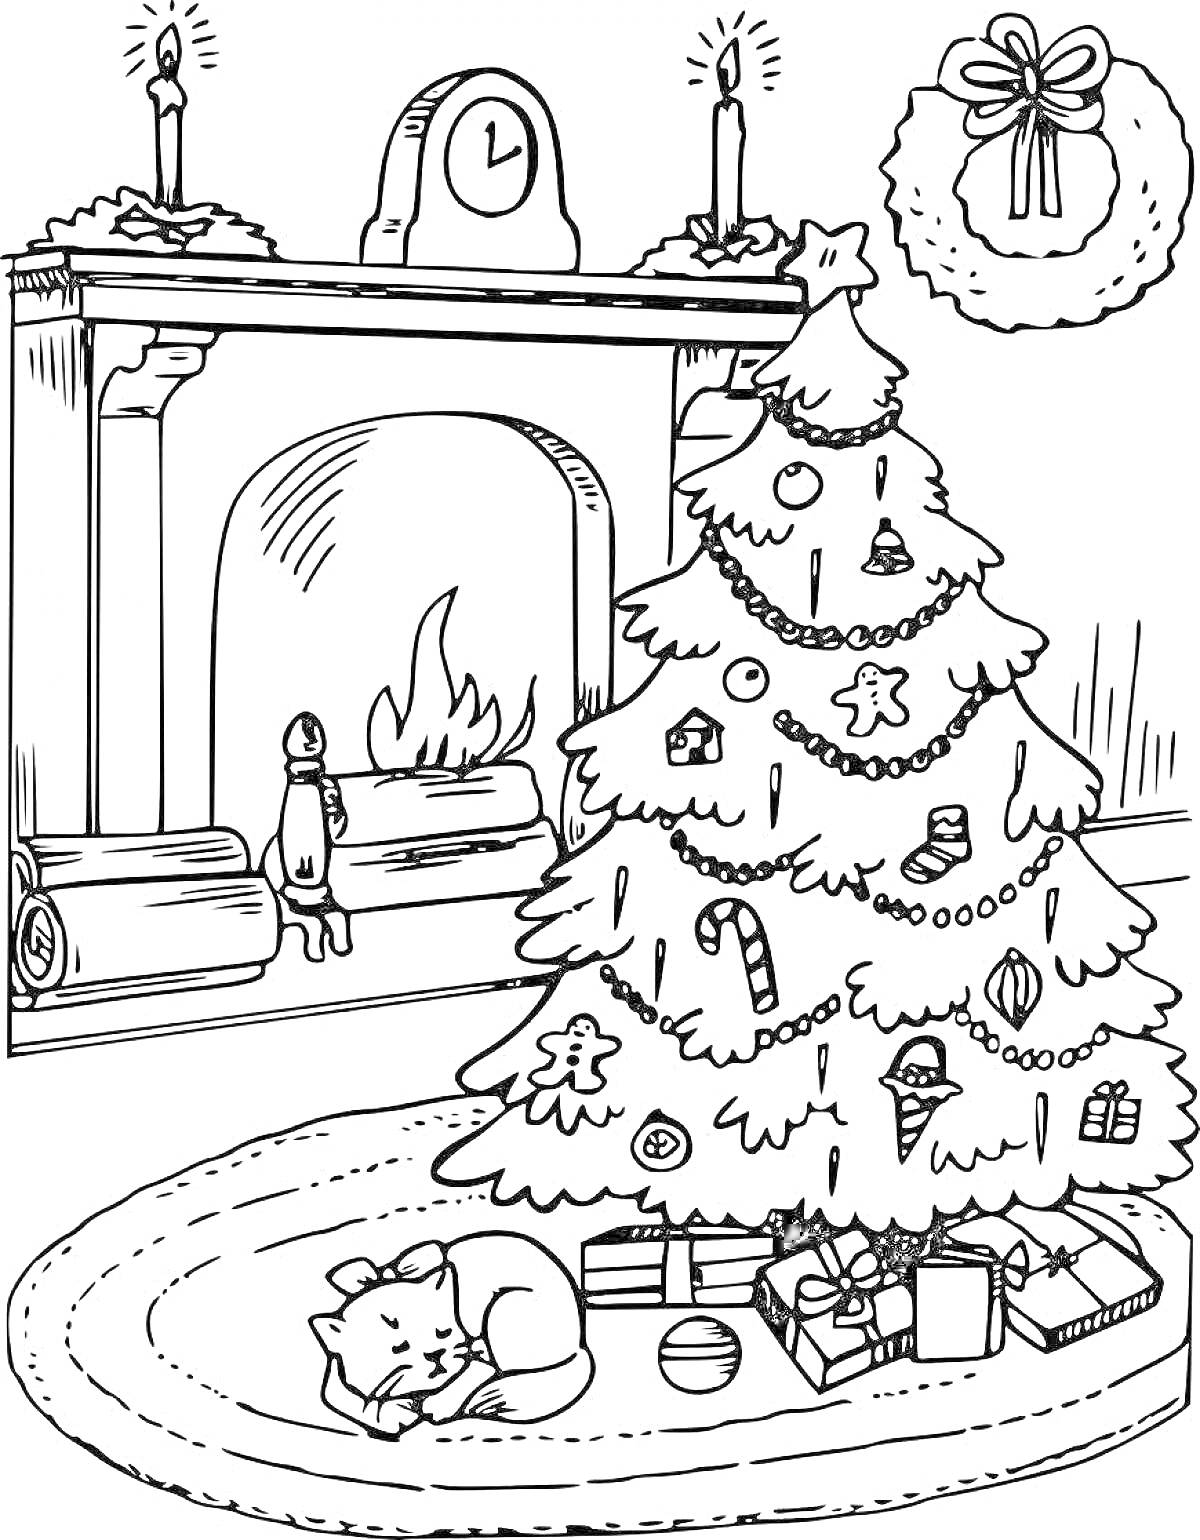 Раскраска Рождественская сцена у камина с ёлкой, подарками и спящим котом